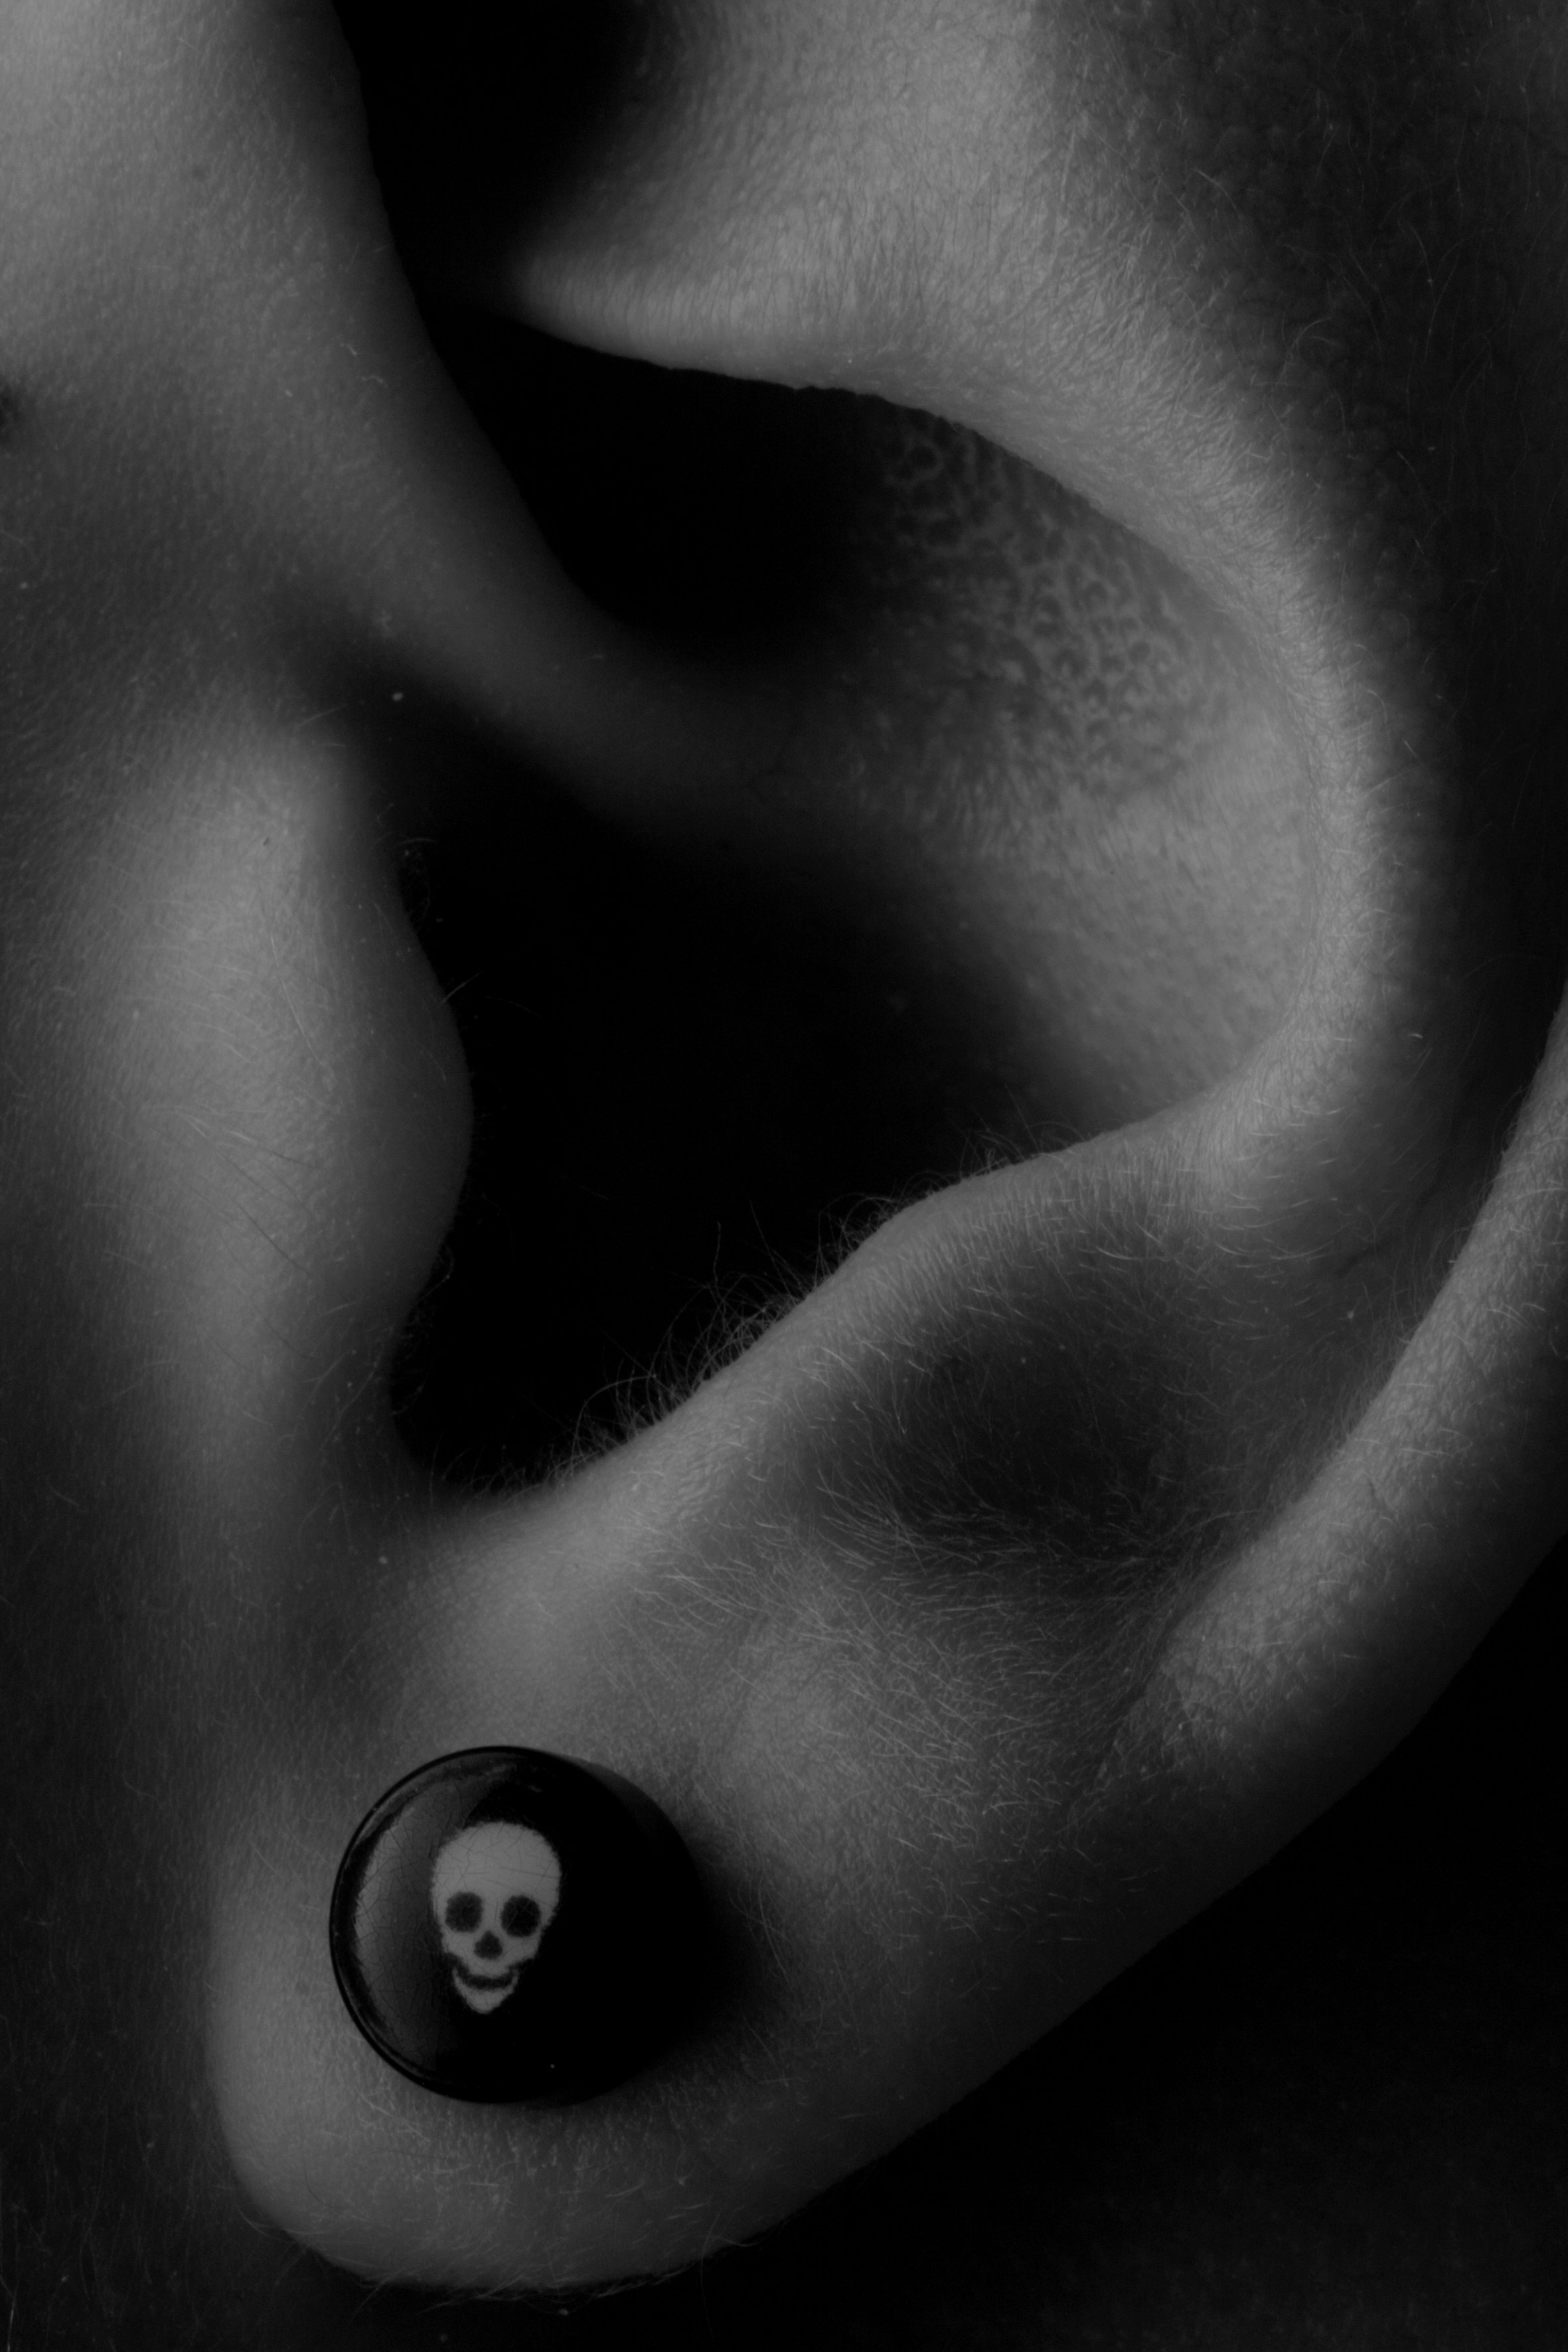 Detail shot of ear with skull earring